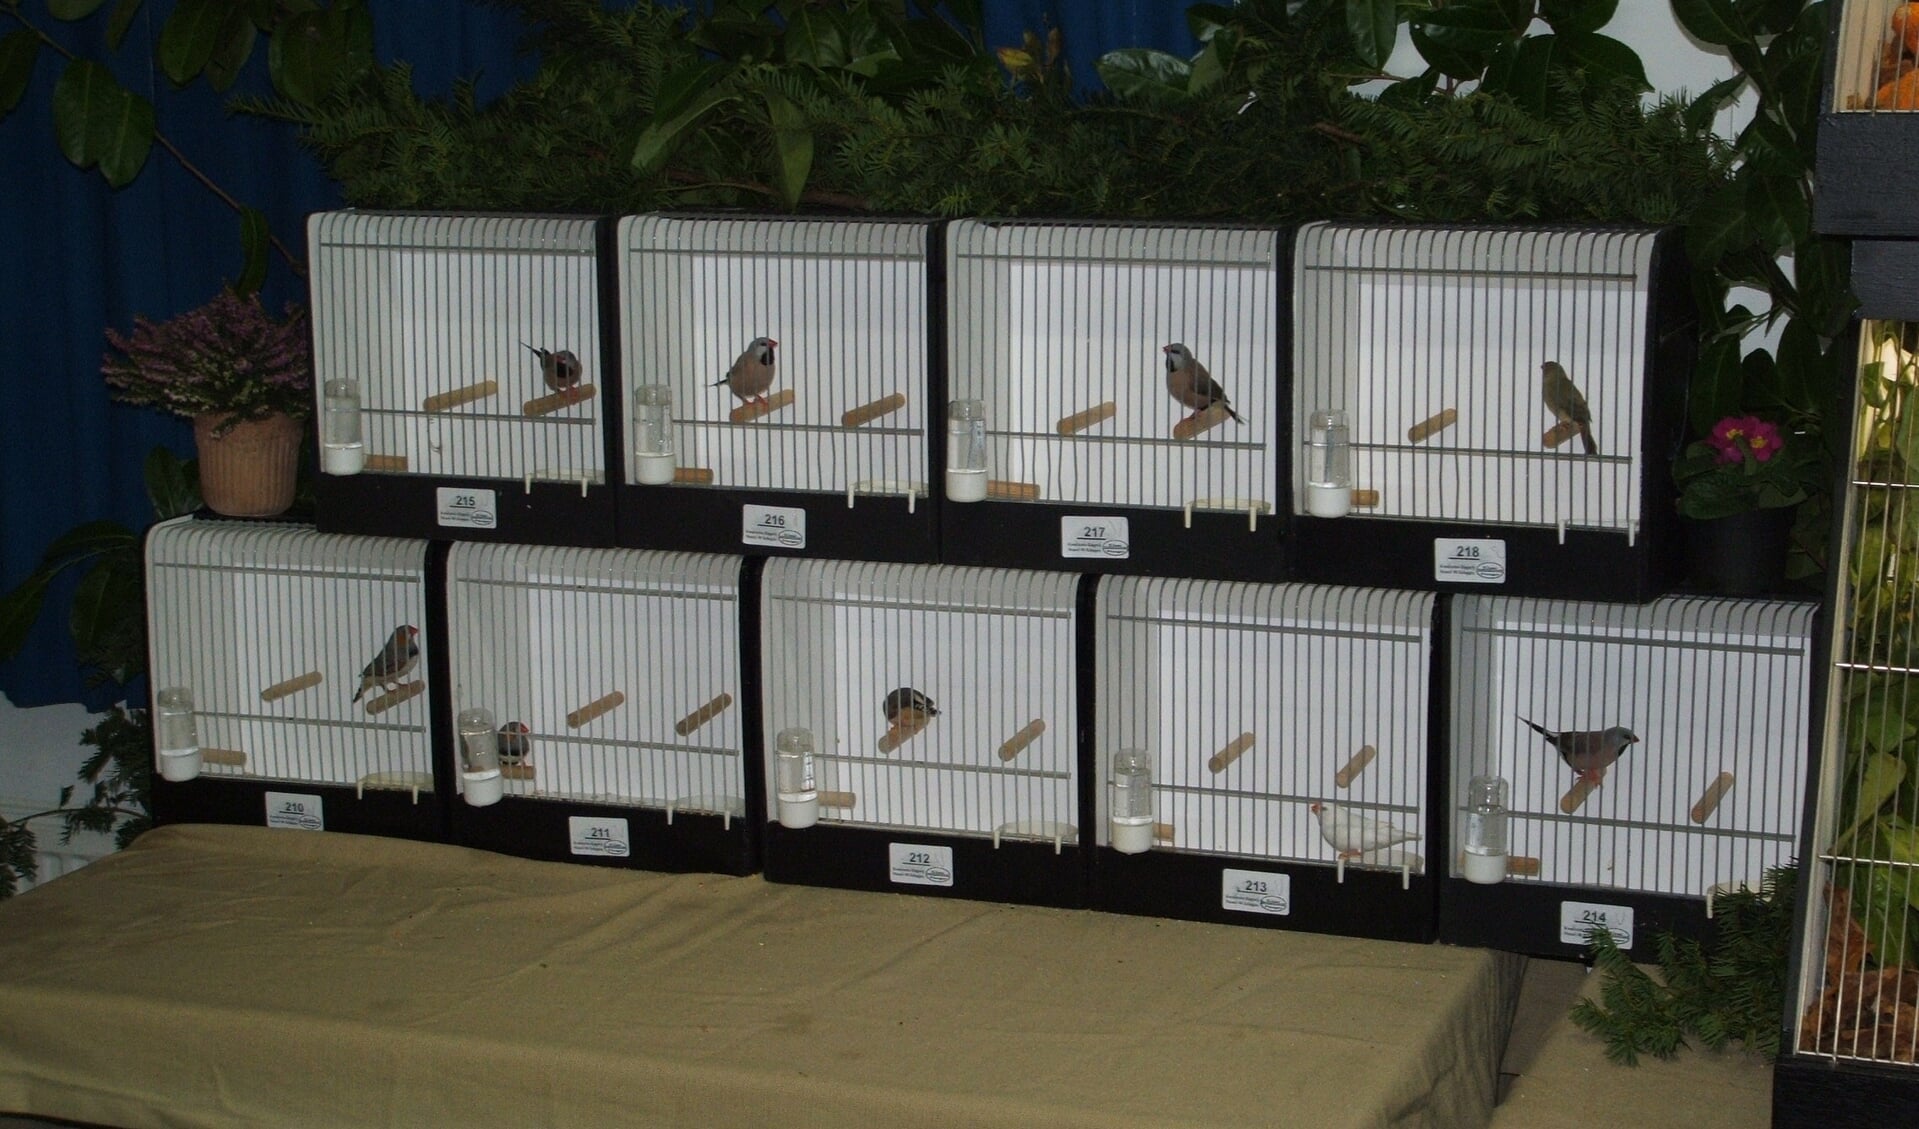 De vogels worden voor de tentoonstelling in speciale kooien geplaatst.